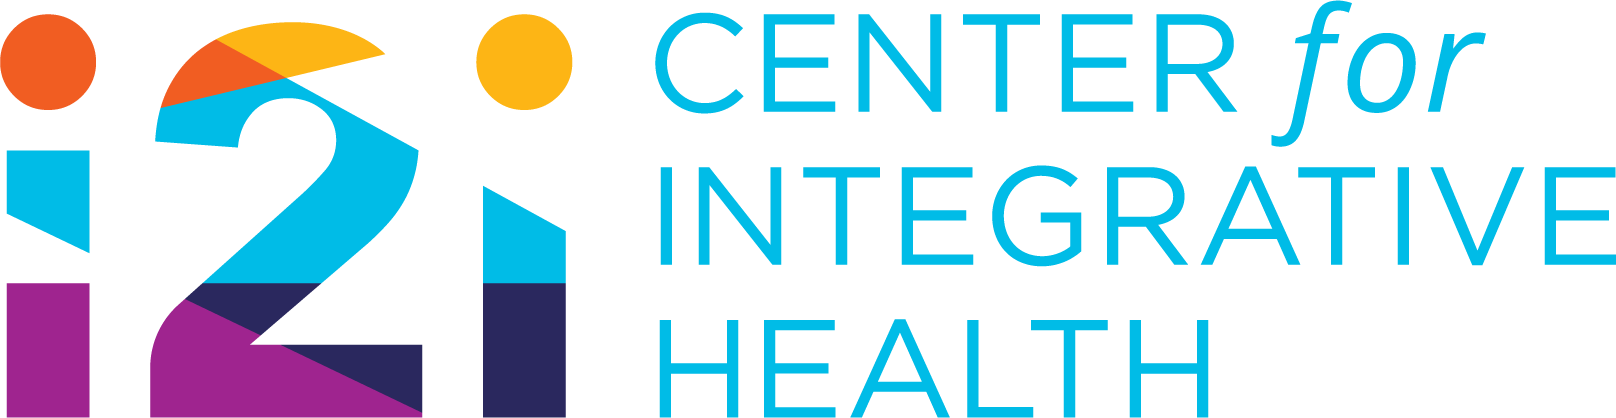 i2i center of integrative health logo